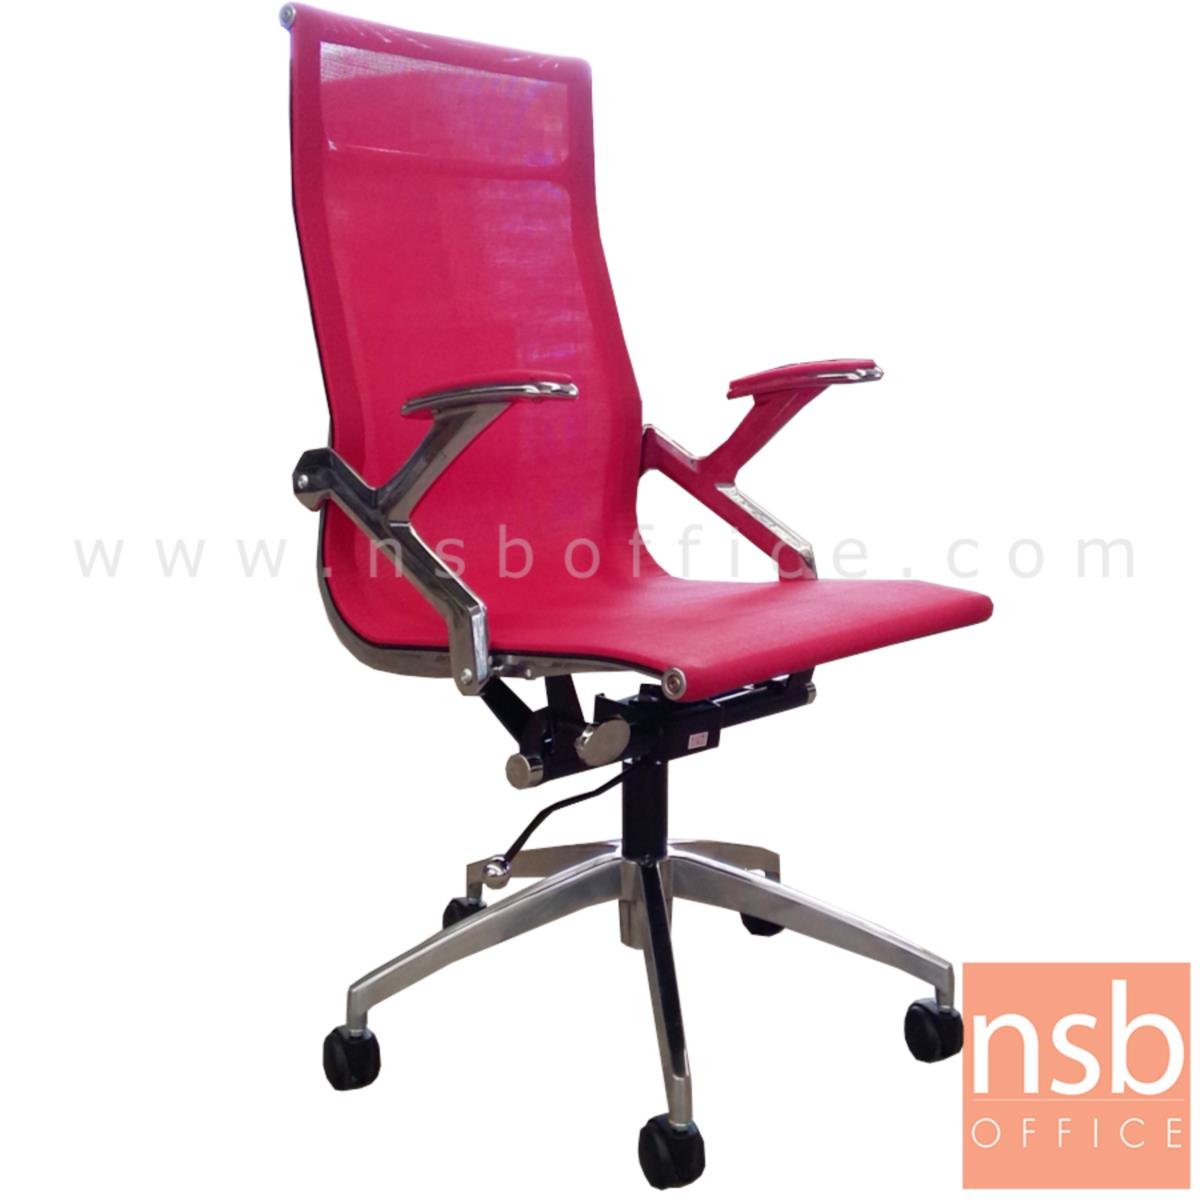 B24A144 :เก้าอี้ผู้บริหารหลังเน็ต รุ่น JR-613W  โช๊คแก๊ส มีก้อนโยก ขาอลูมิเนียม